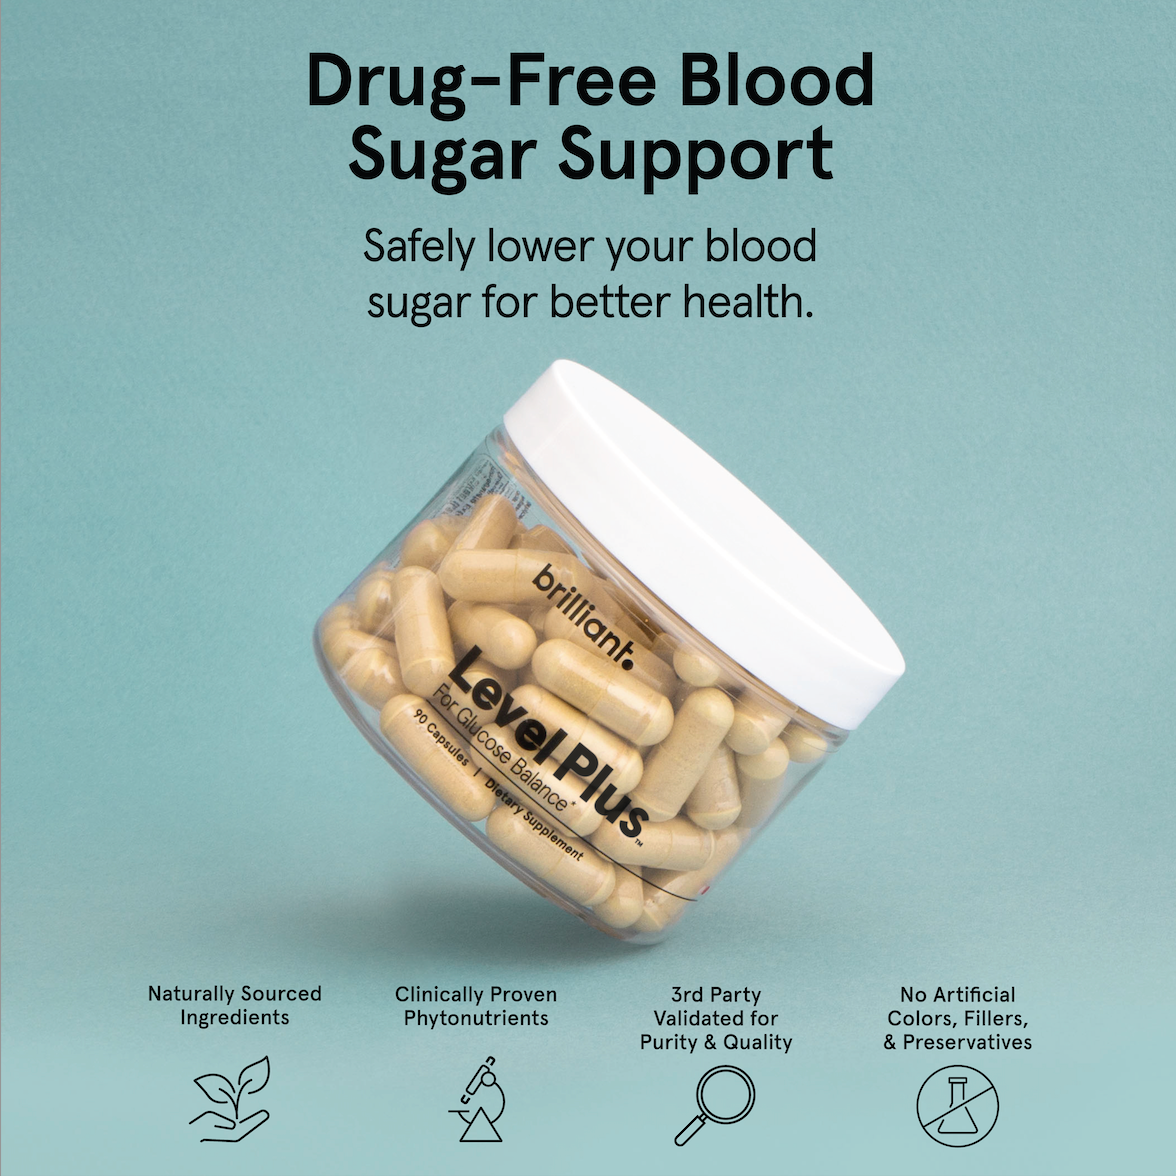 Brilliant Level Plus™ — Blood Sugar Support